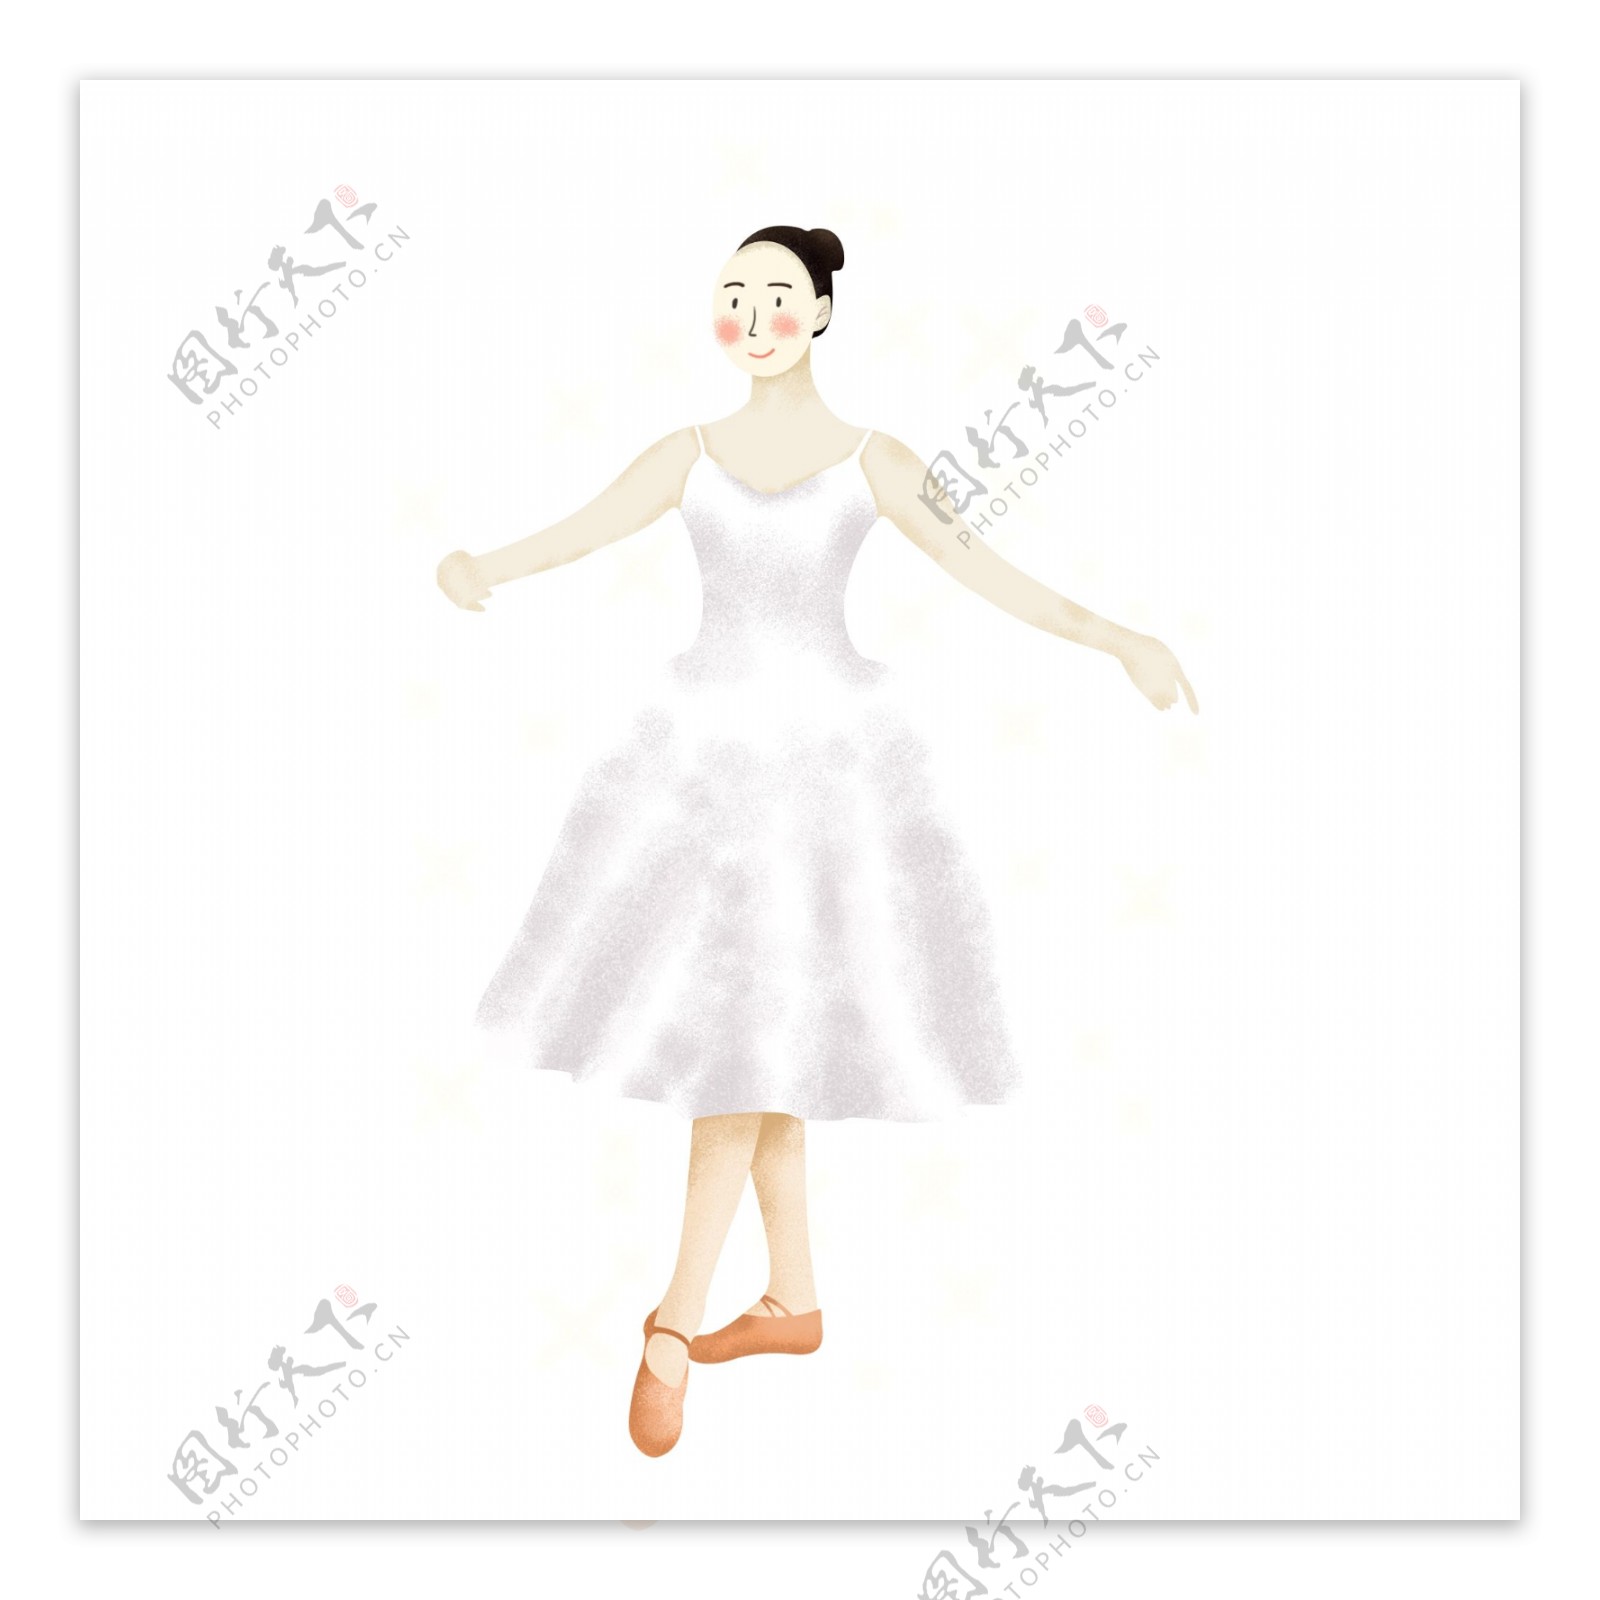 手绘星光中身穿白裙跳芭蕾舞的女孩人物元素